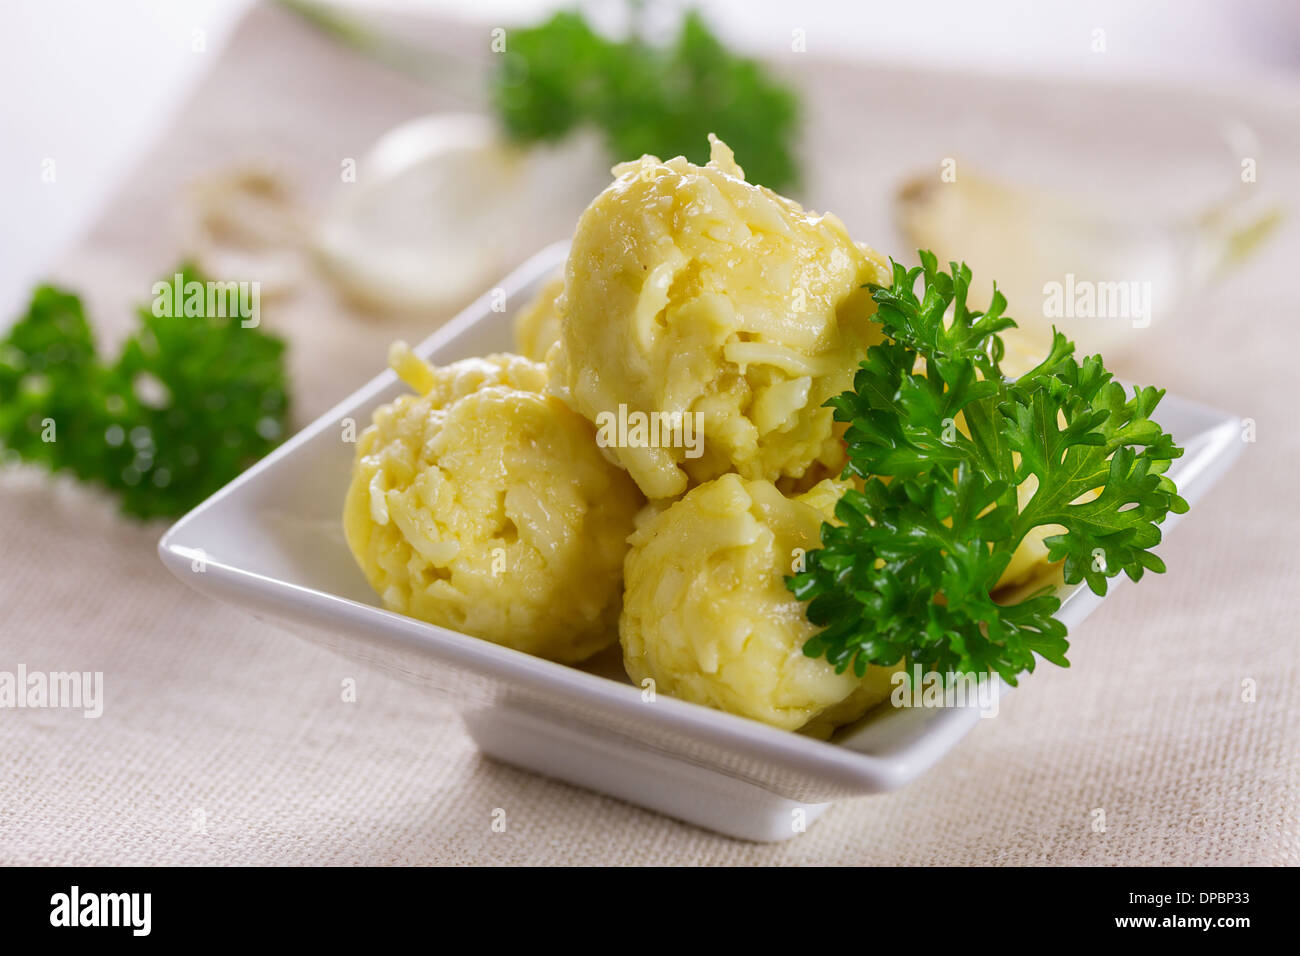 Cheese balls with garlic and mayonnaise Stock Photo